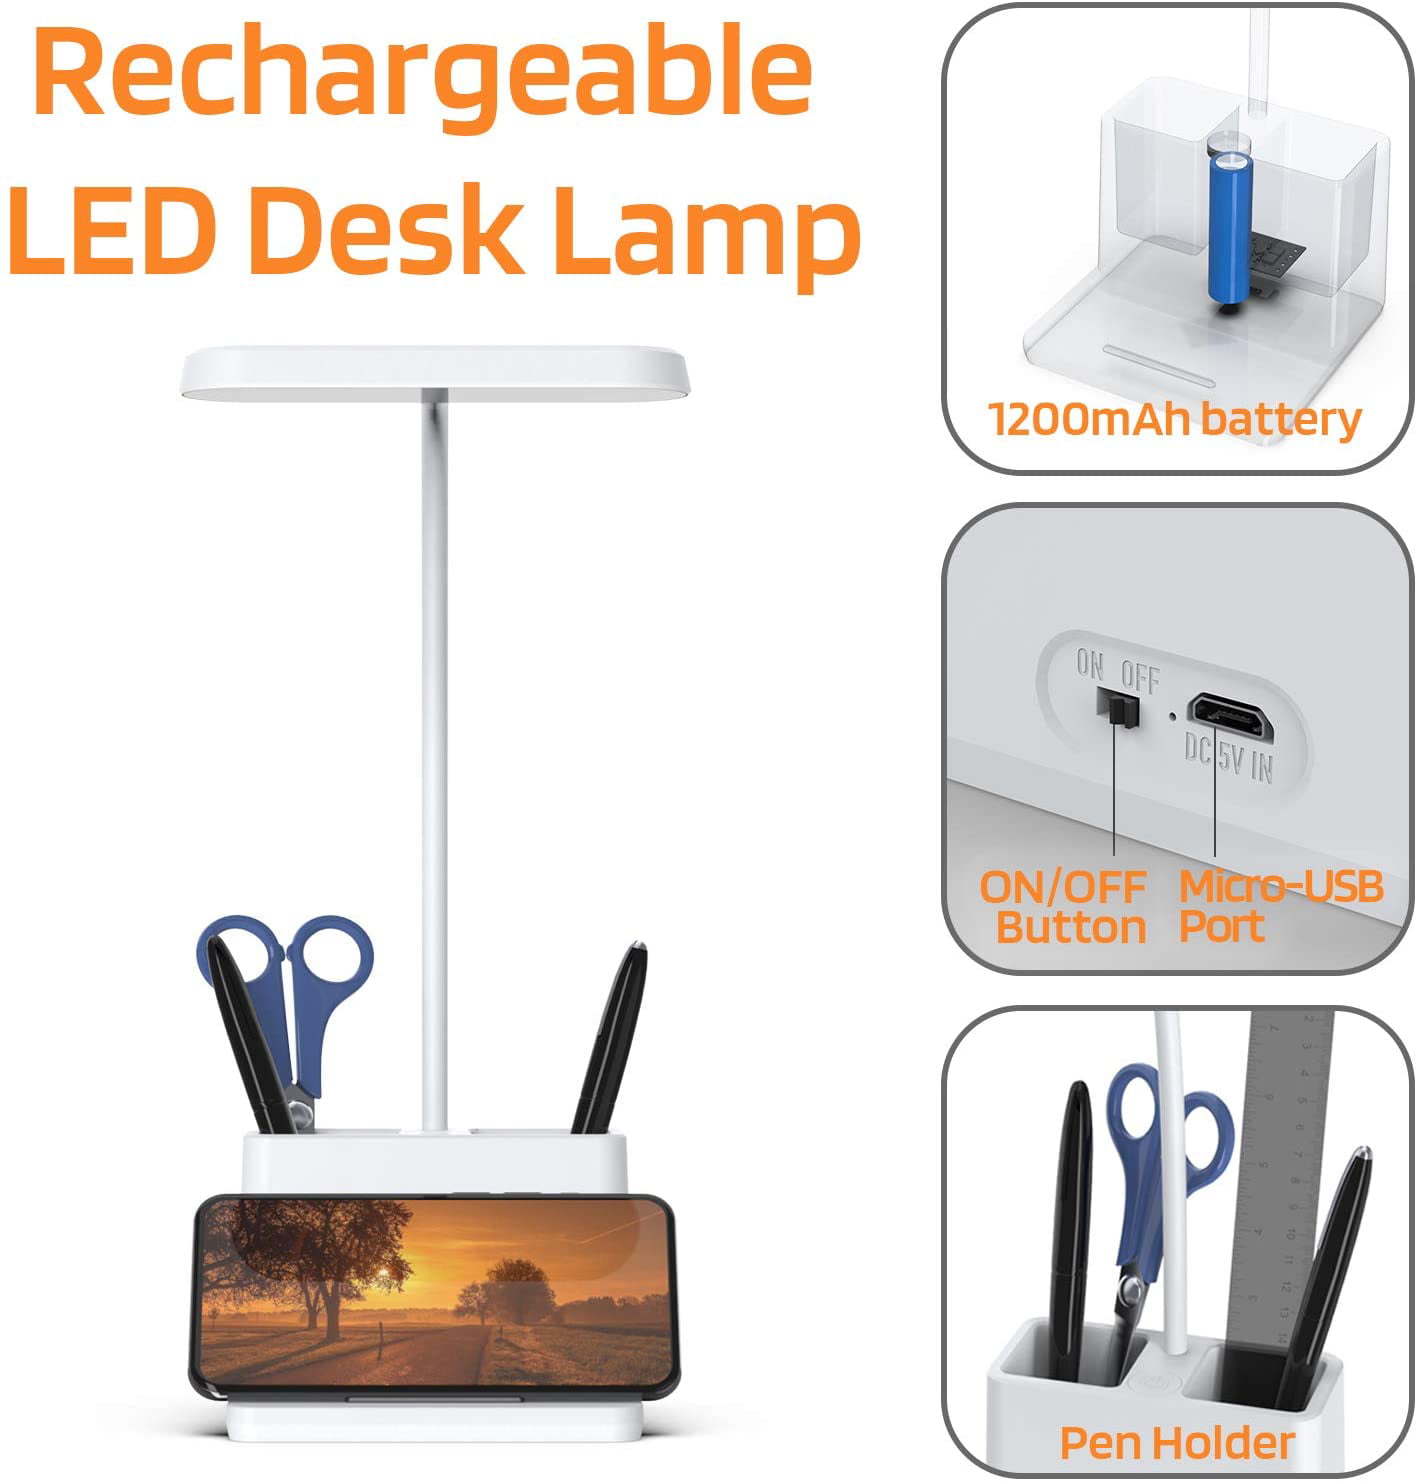 LED Desk Lamp with USB Charging Port & Pen Holder